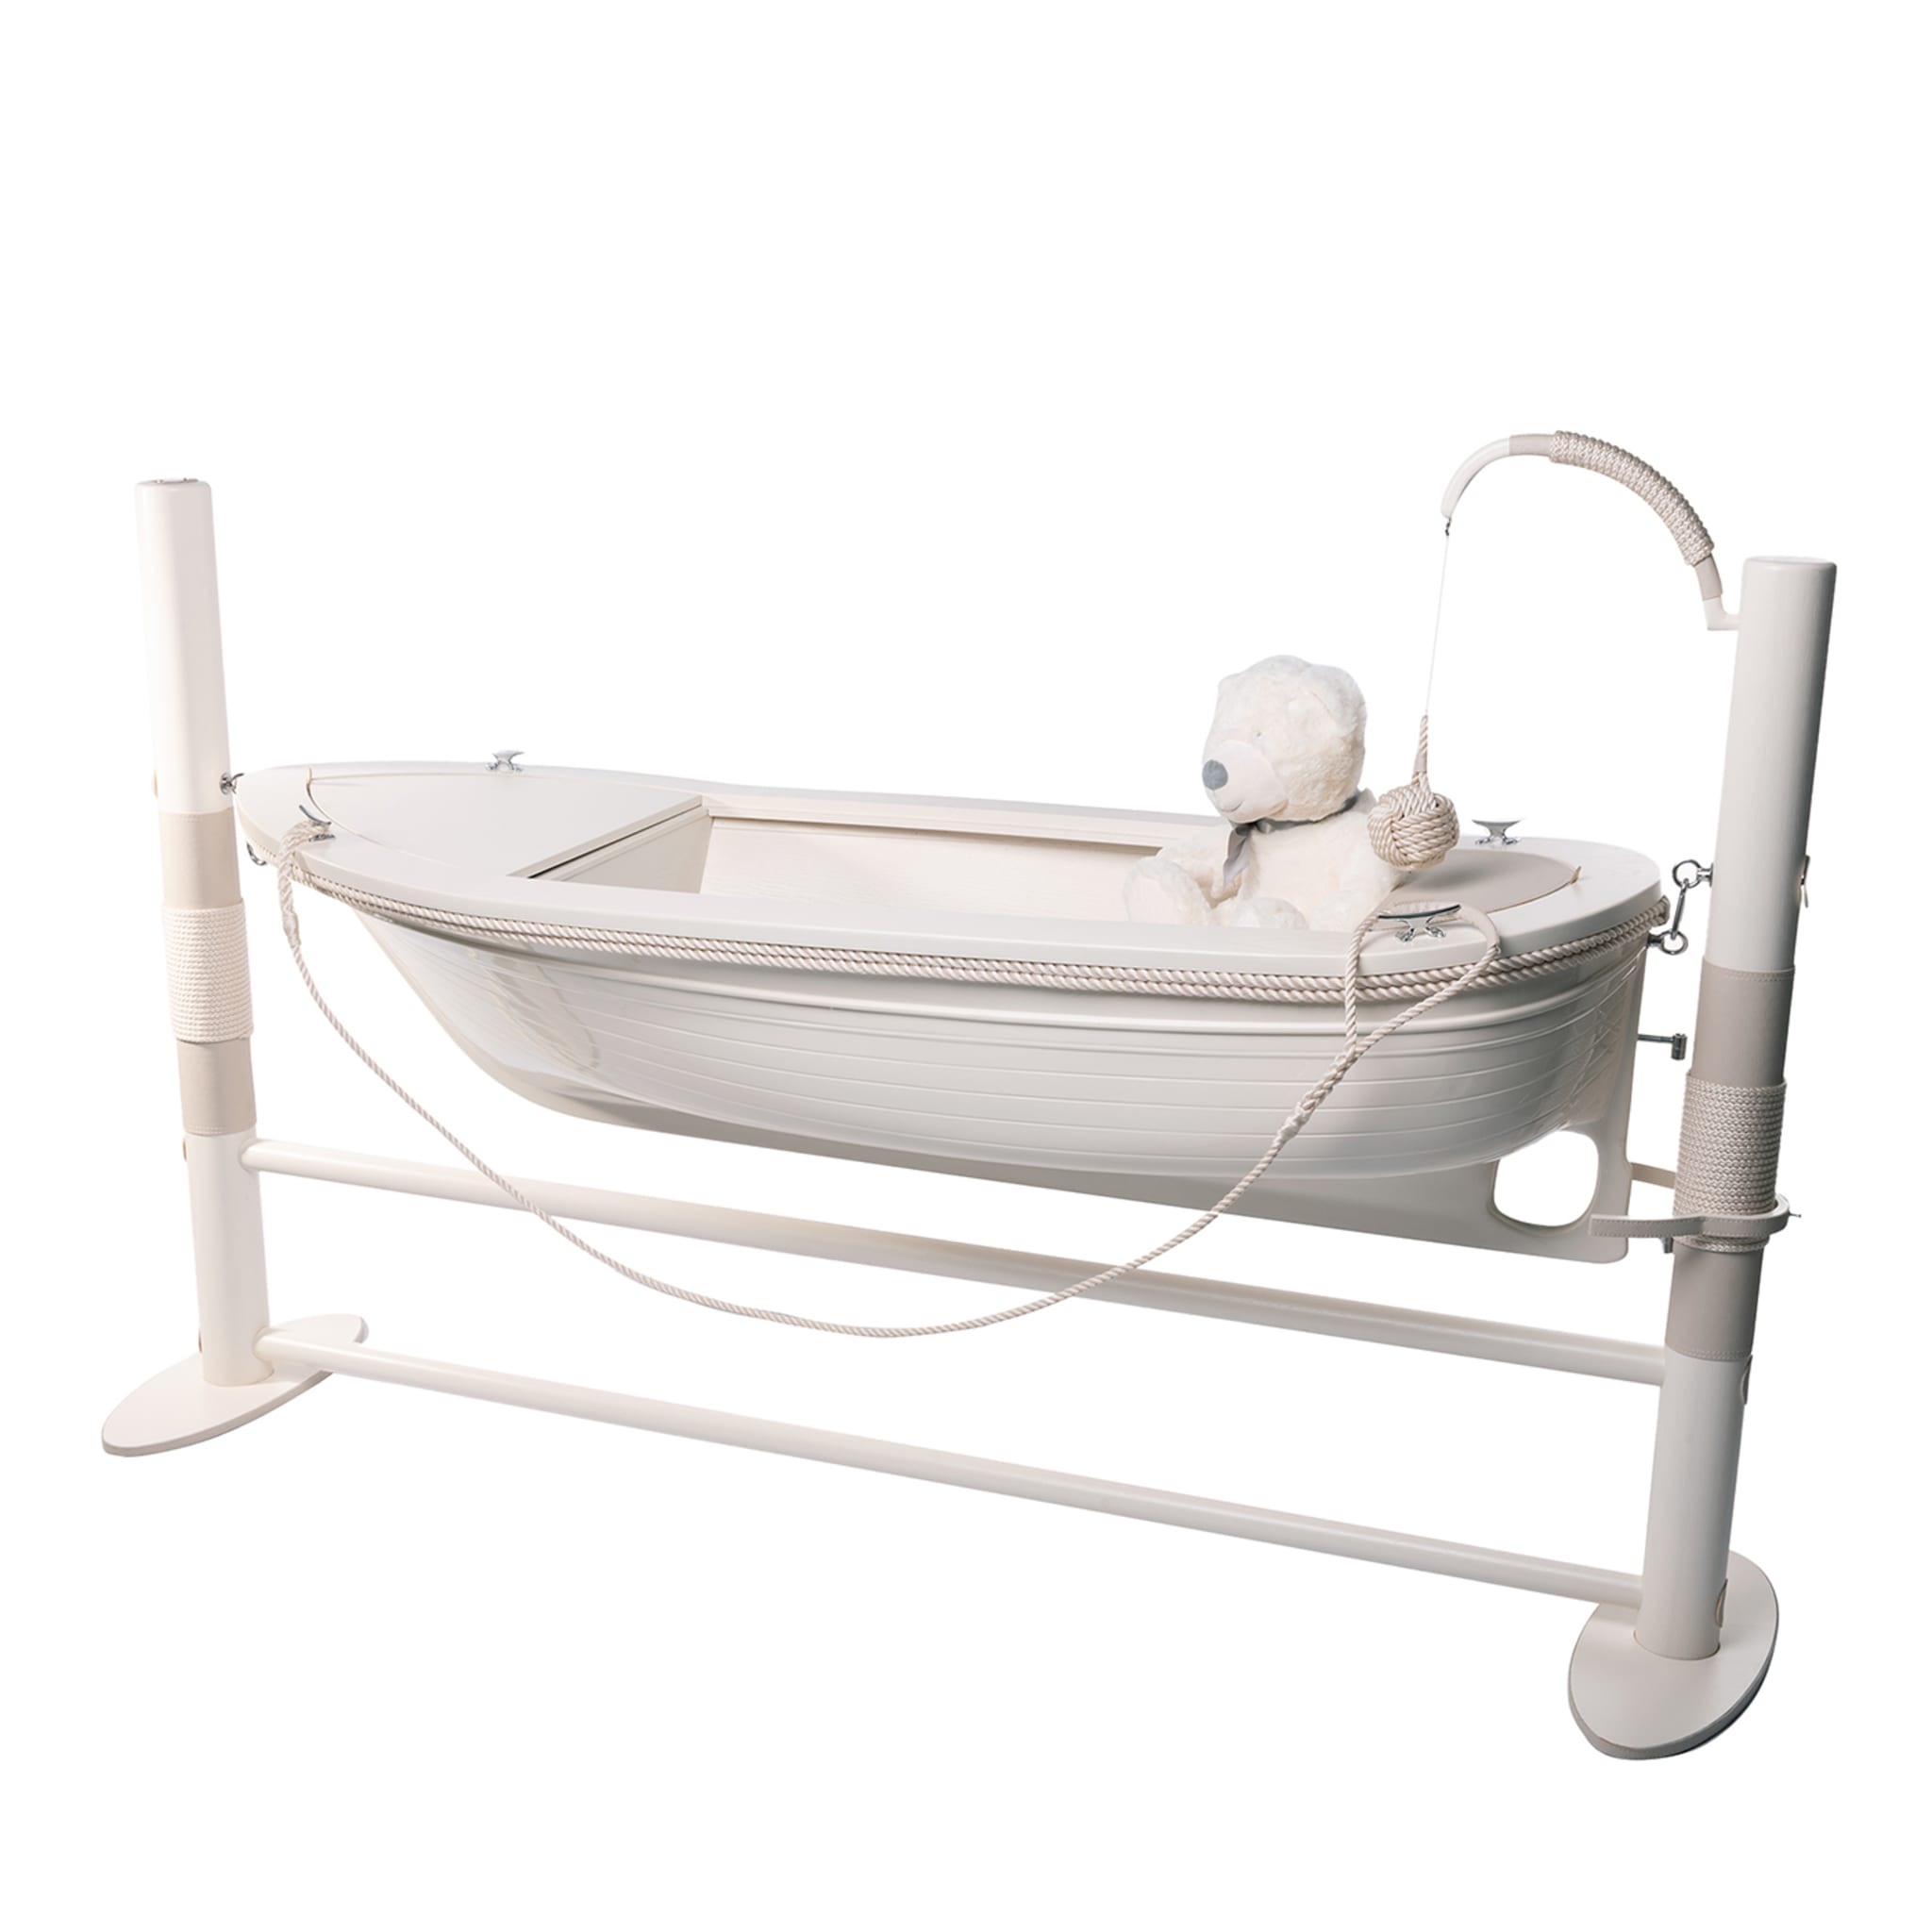 La Barchetta Boat-Shaped White Cradle/Writing Desk - Main view